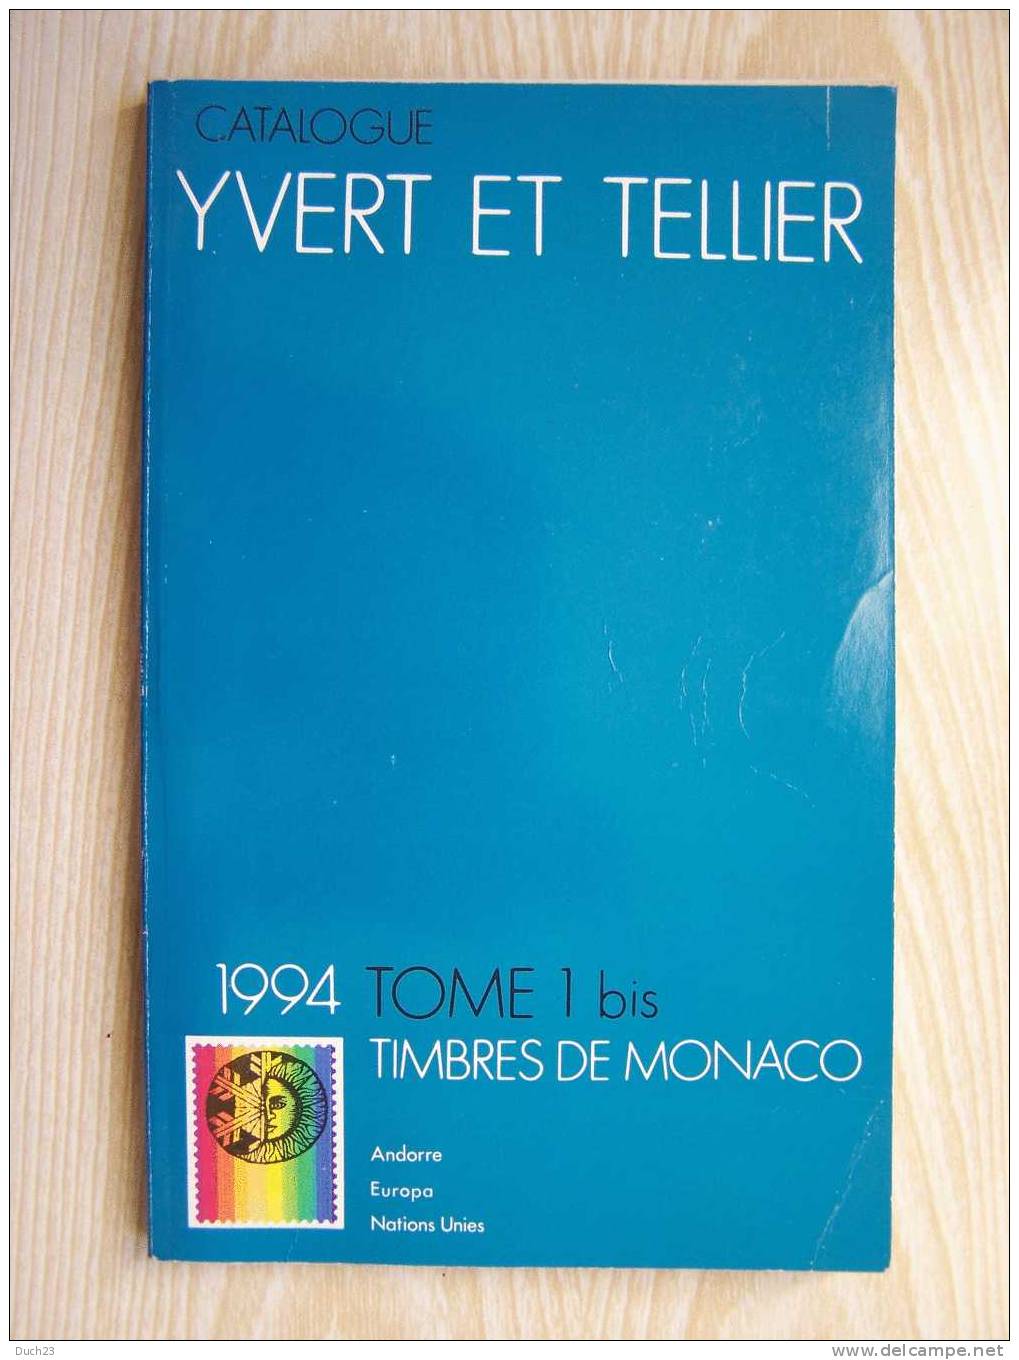 CATALOGUE DE COTATION YVERT ET TELLIER ANNEE 1994 TOME 1 BIS  TRES BON ETAT   REF CD - France